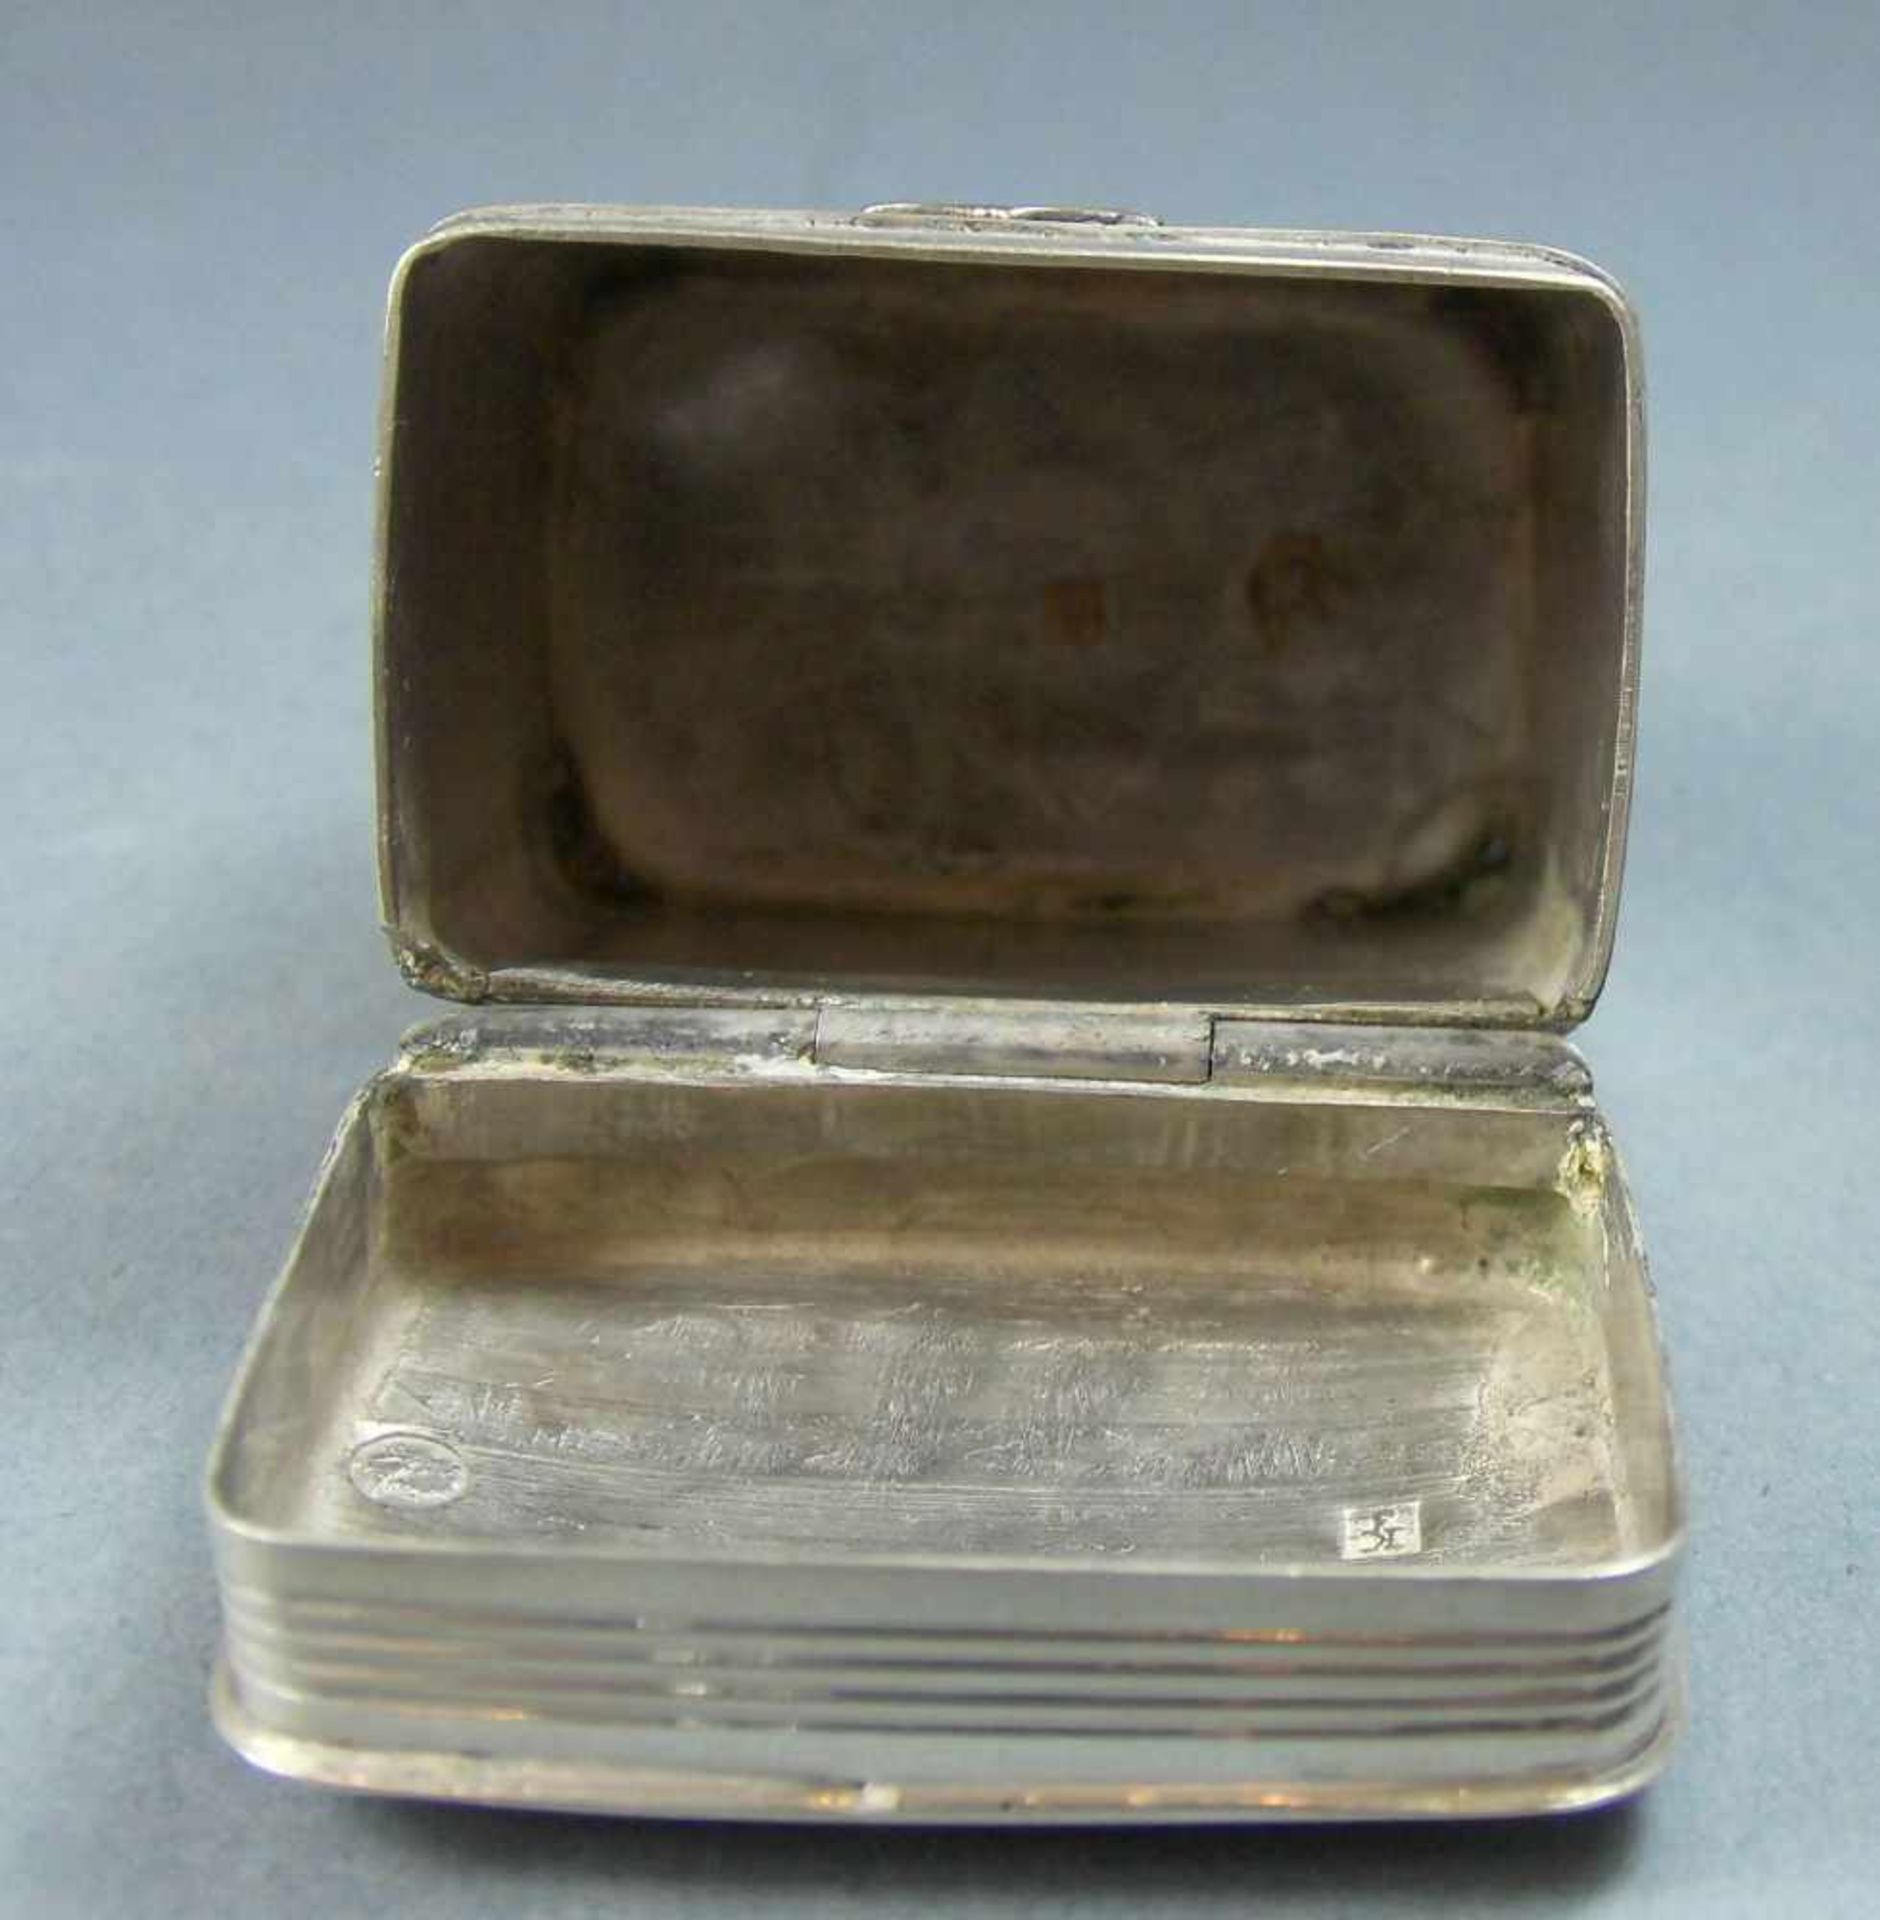 KLEINE PILLENDOSE / SCHATULLE / silver pill box, 20, Jh., 833 Silber (20 g), Niederlande. Gepunzt - Image 6 of 9